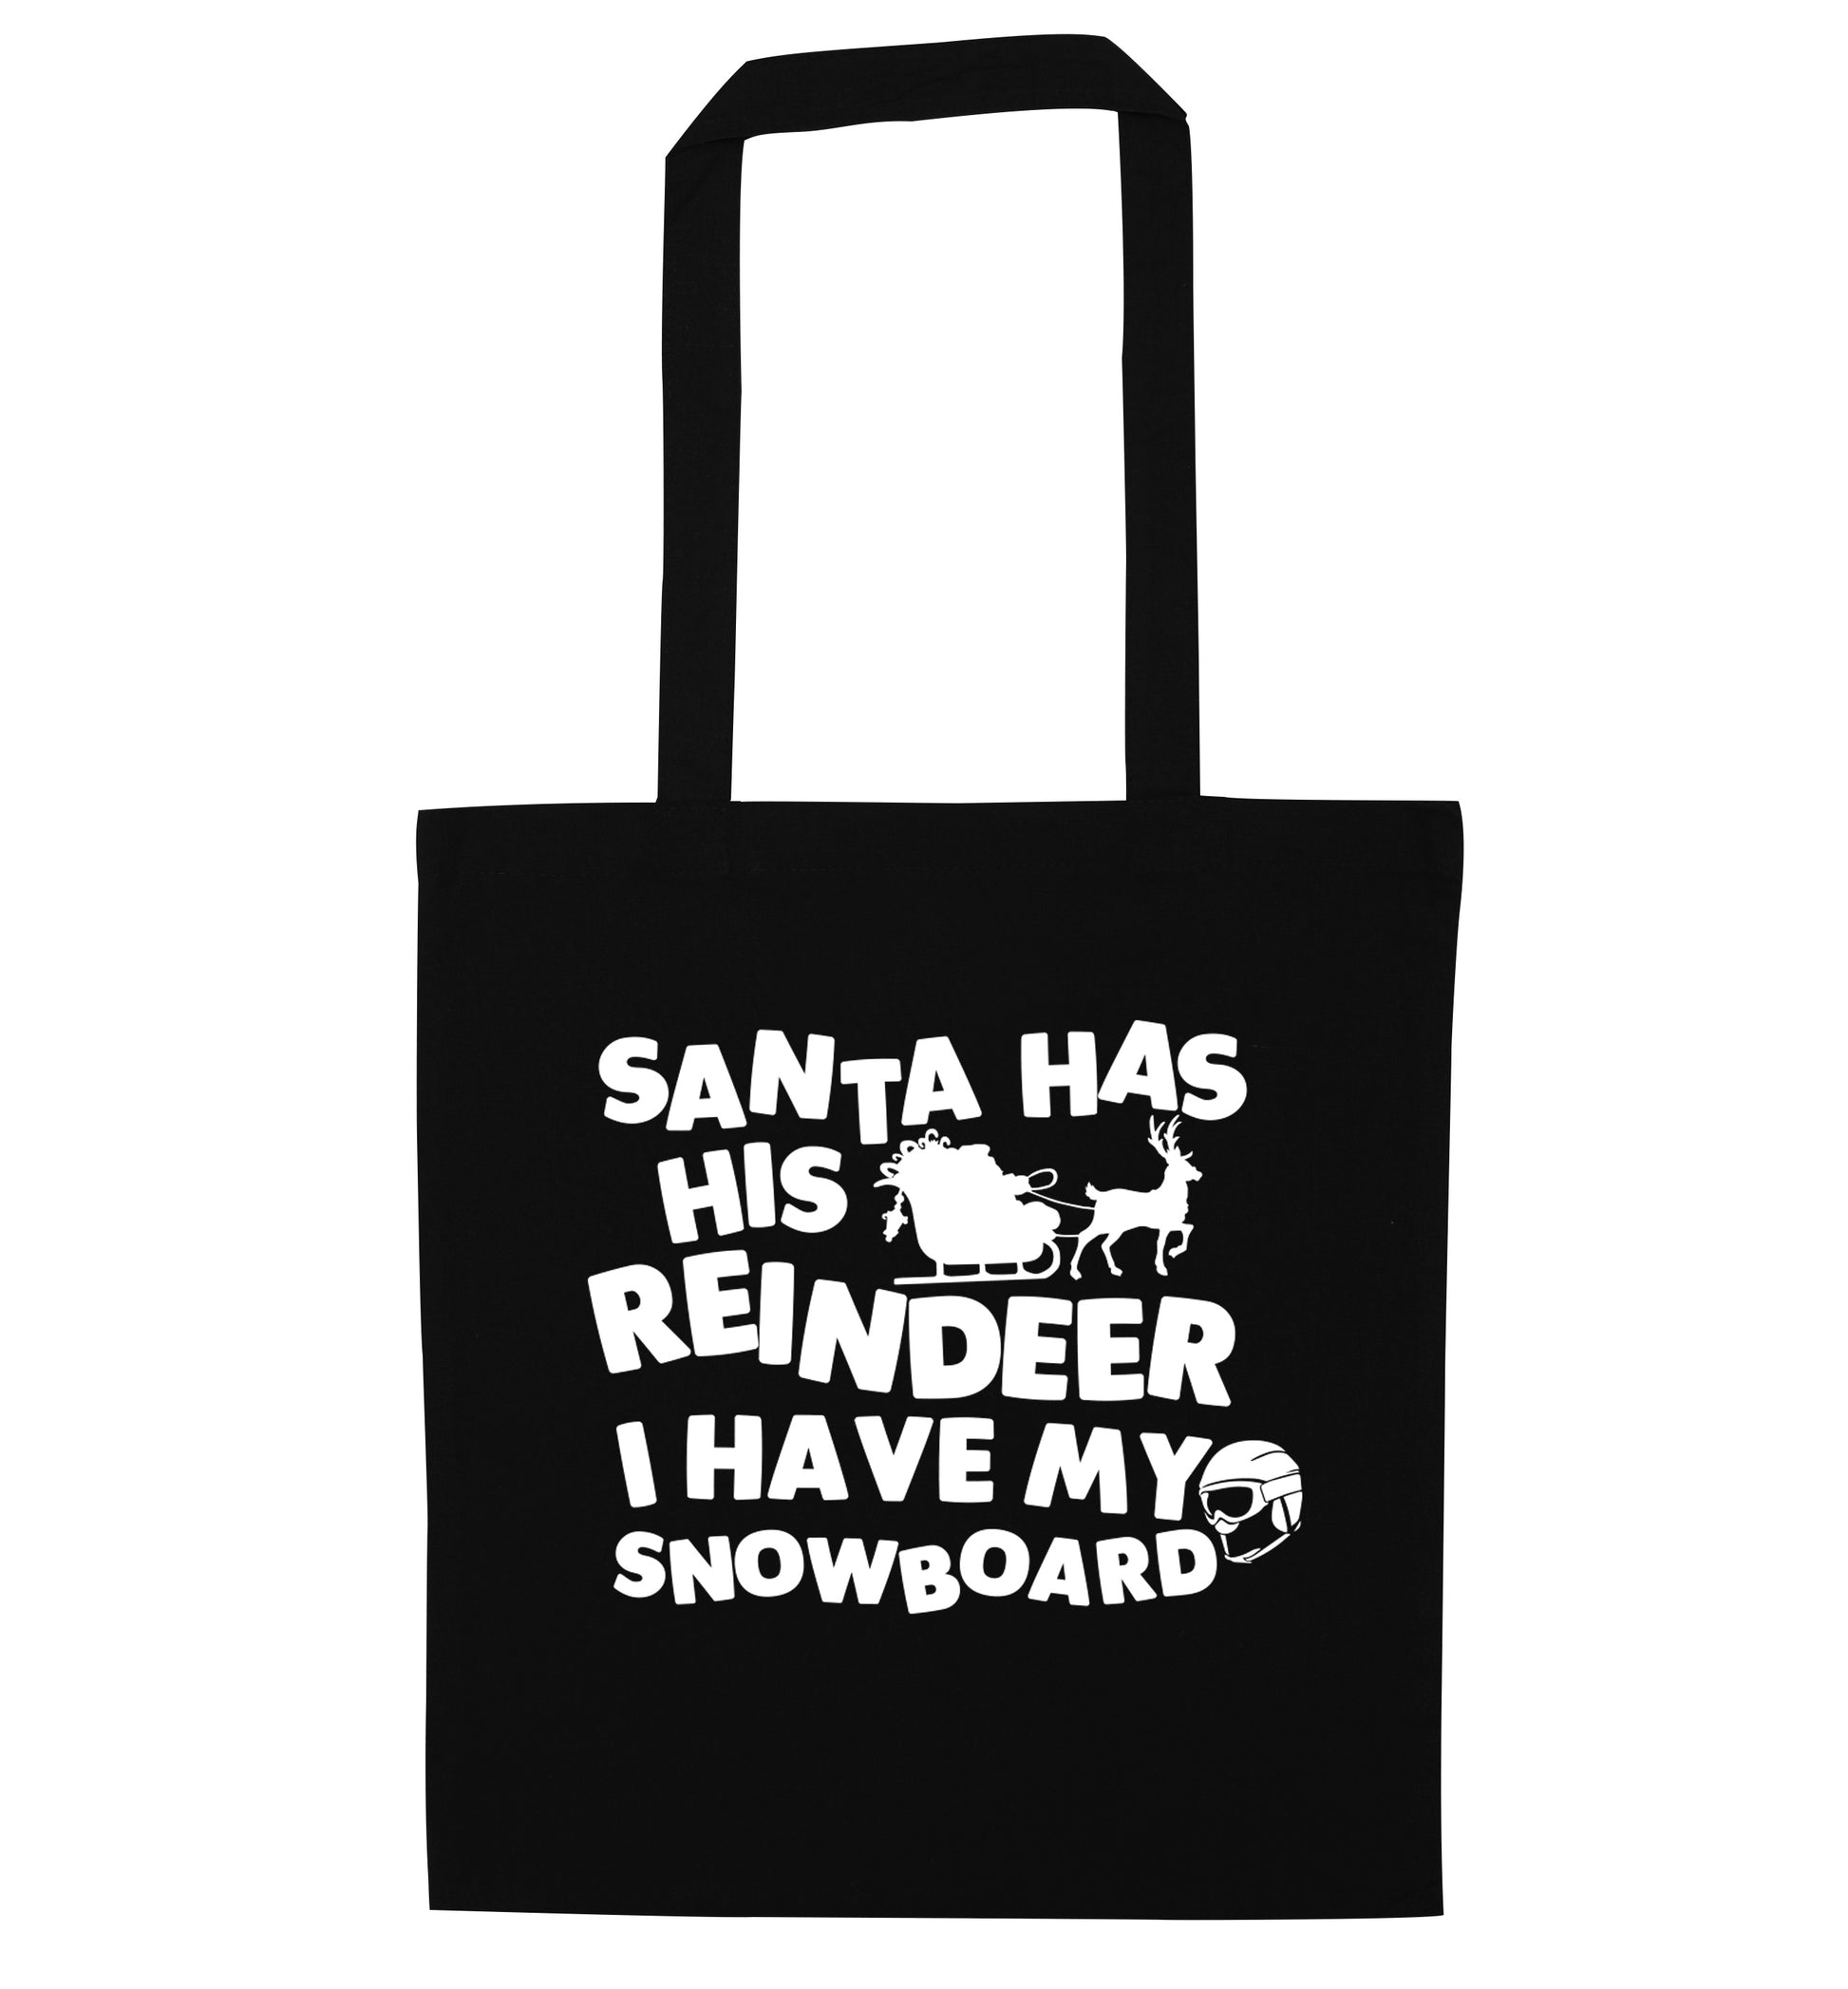 Santa has his reindeer I have my snowboard black tote bag